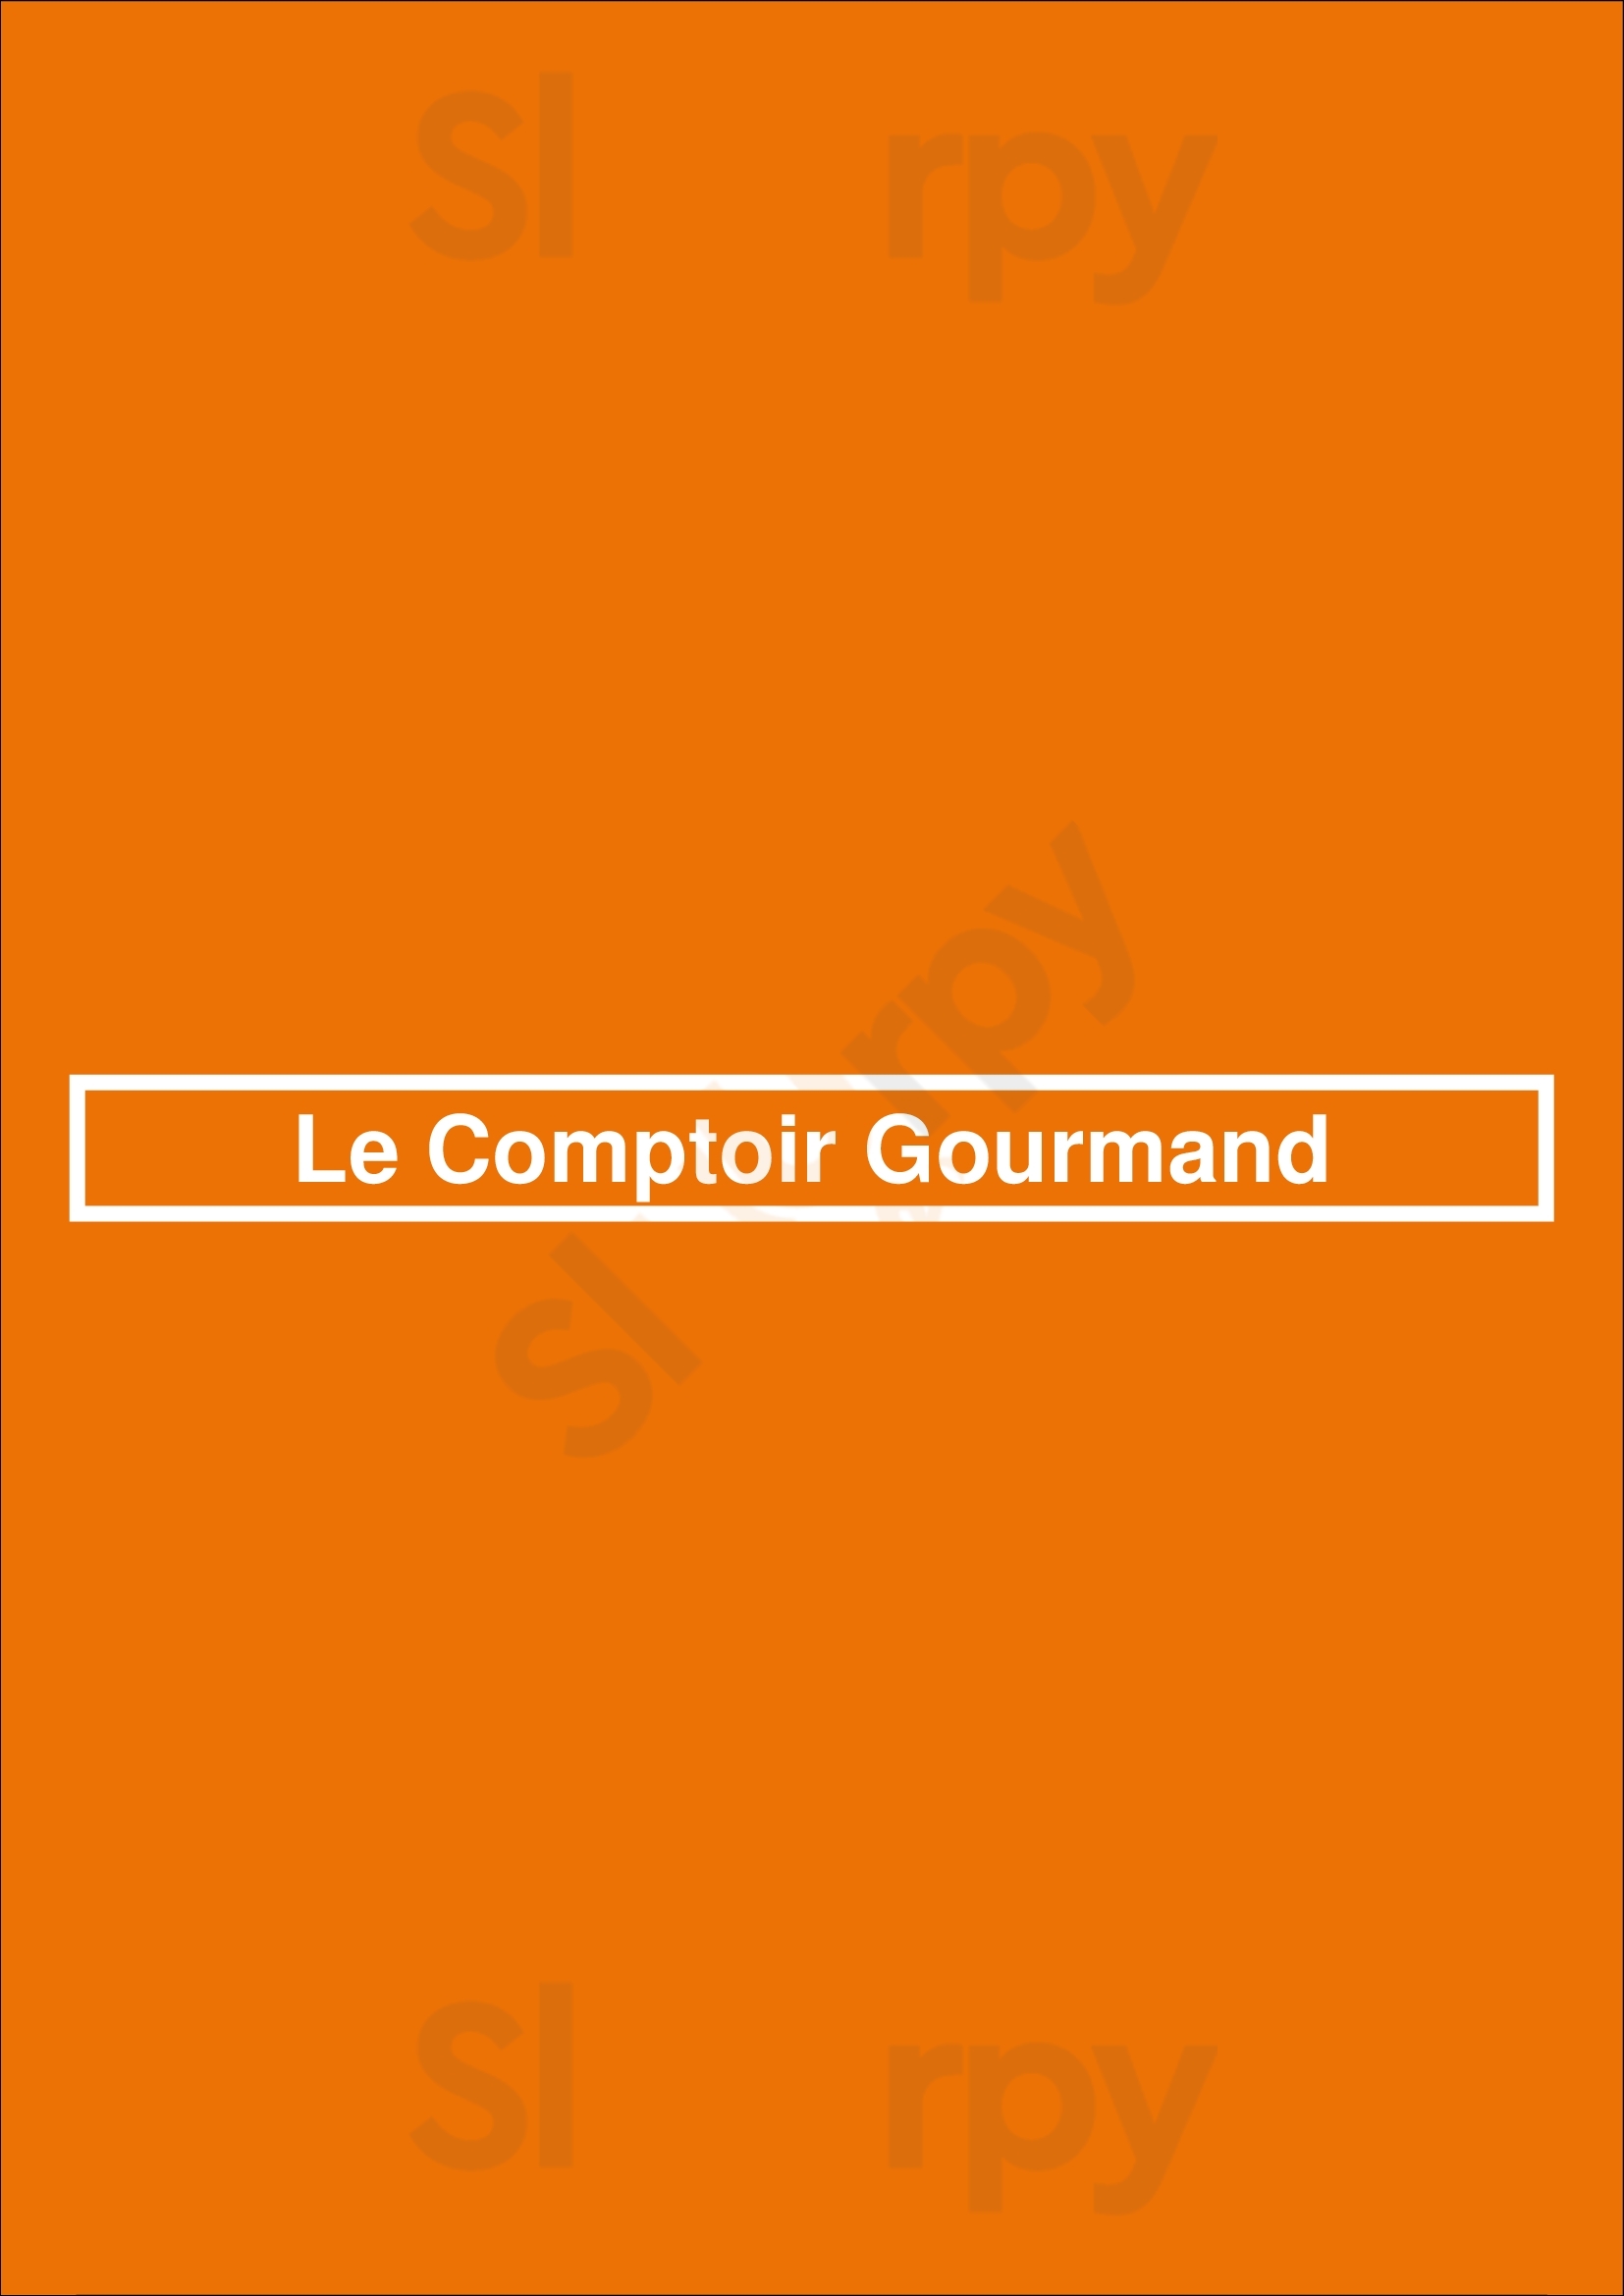 Le Comptoir Gourmand Marche-en-Famenne Menu - 1